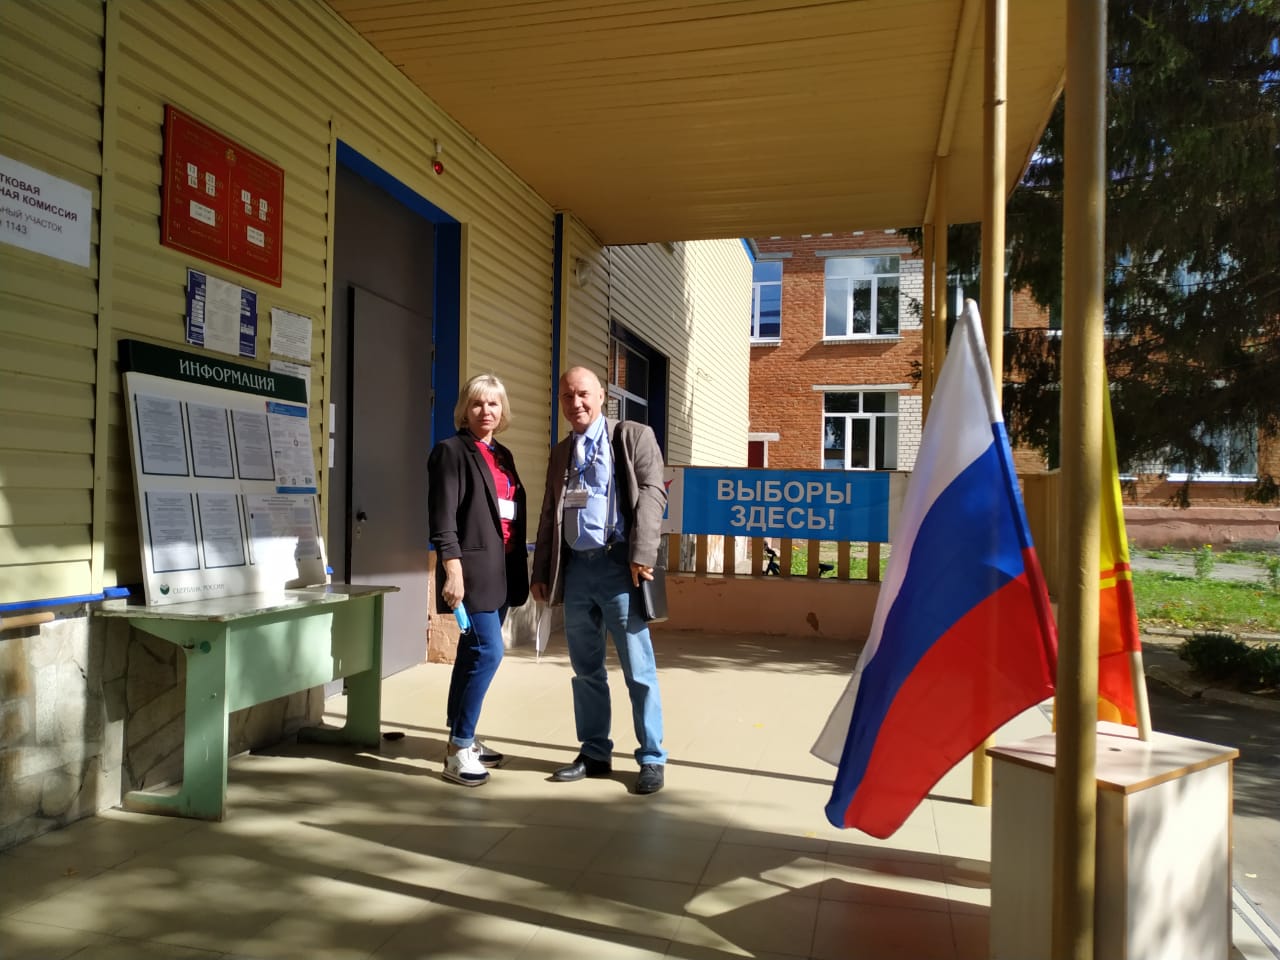 Эксперт «Независимого общественного мониторинга» Владимир Самарин посетил избирательный участок в Шоршелах